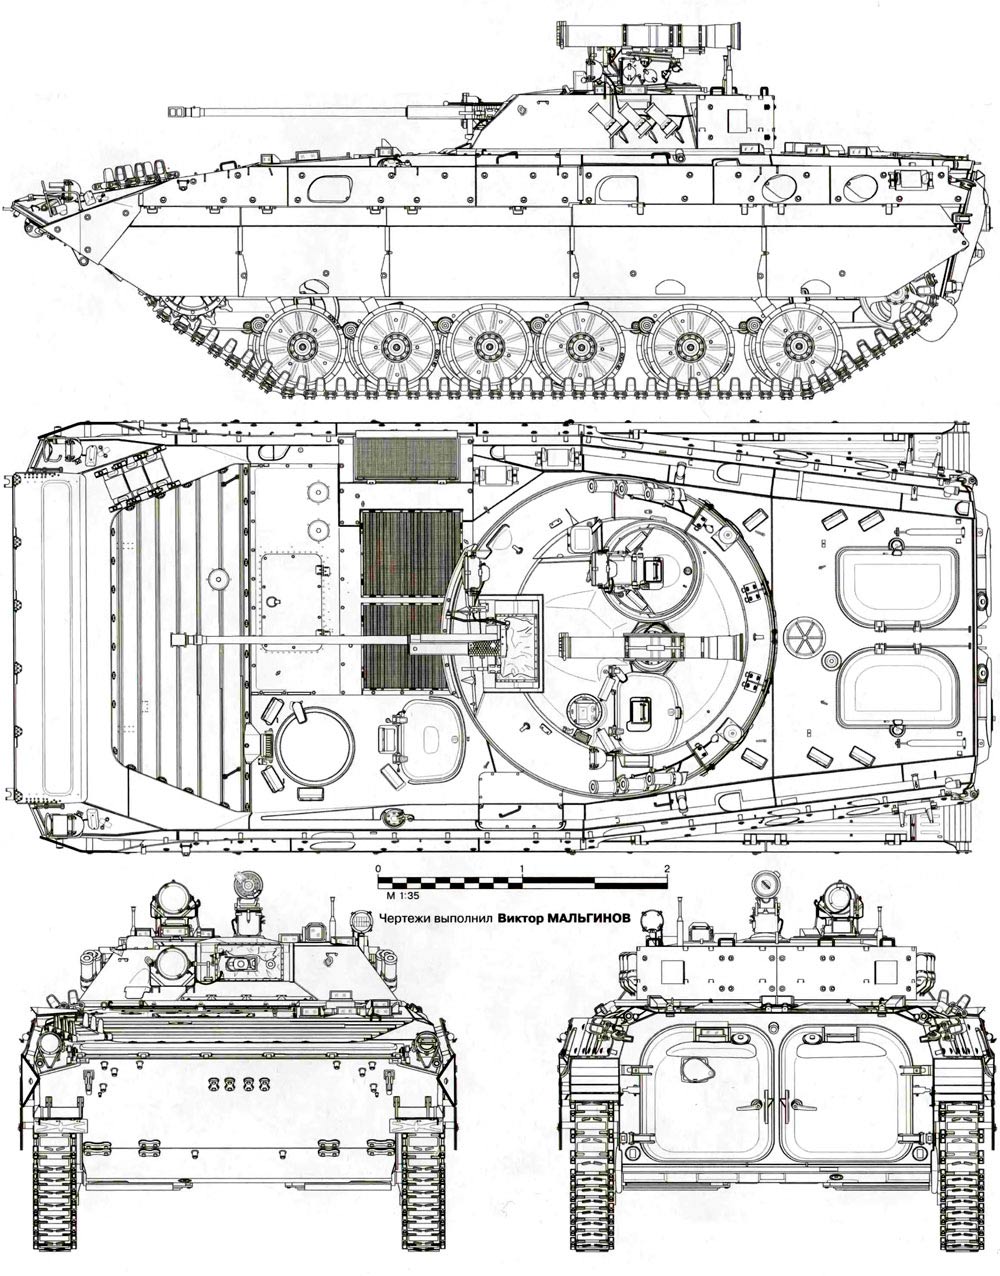 Чертеж боевой машины пехоты - 2 (бмп-2)